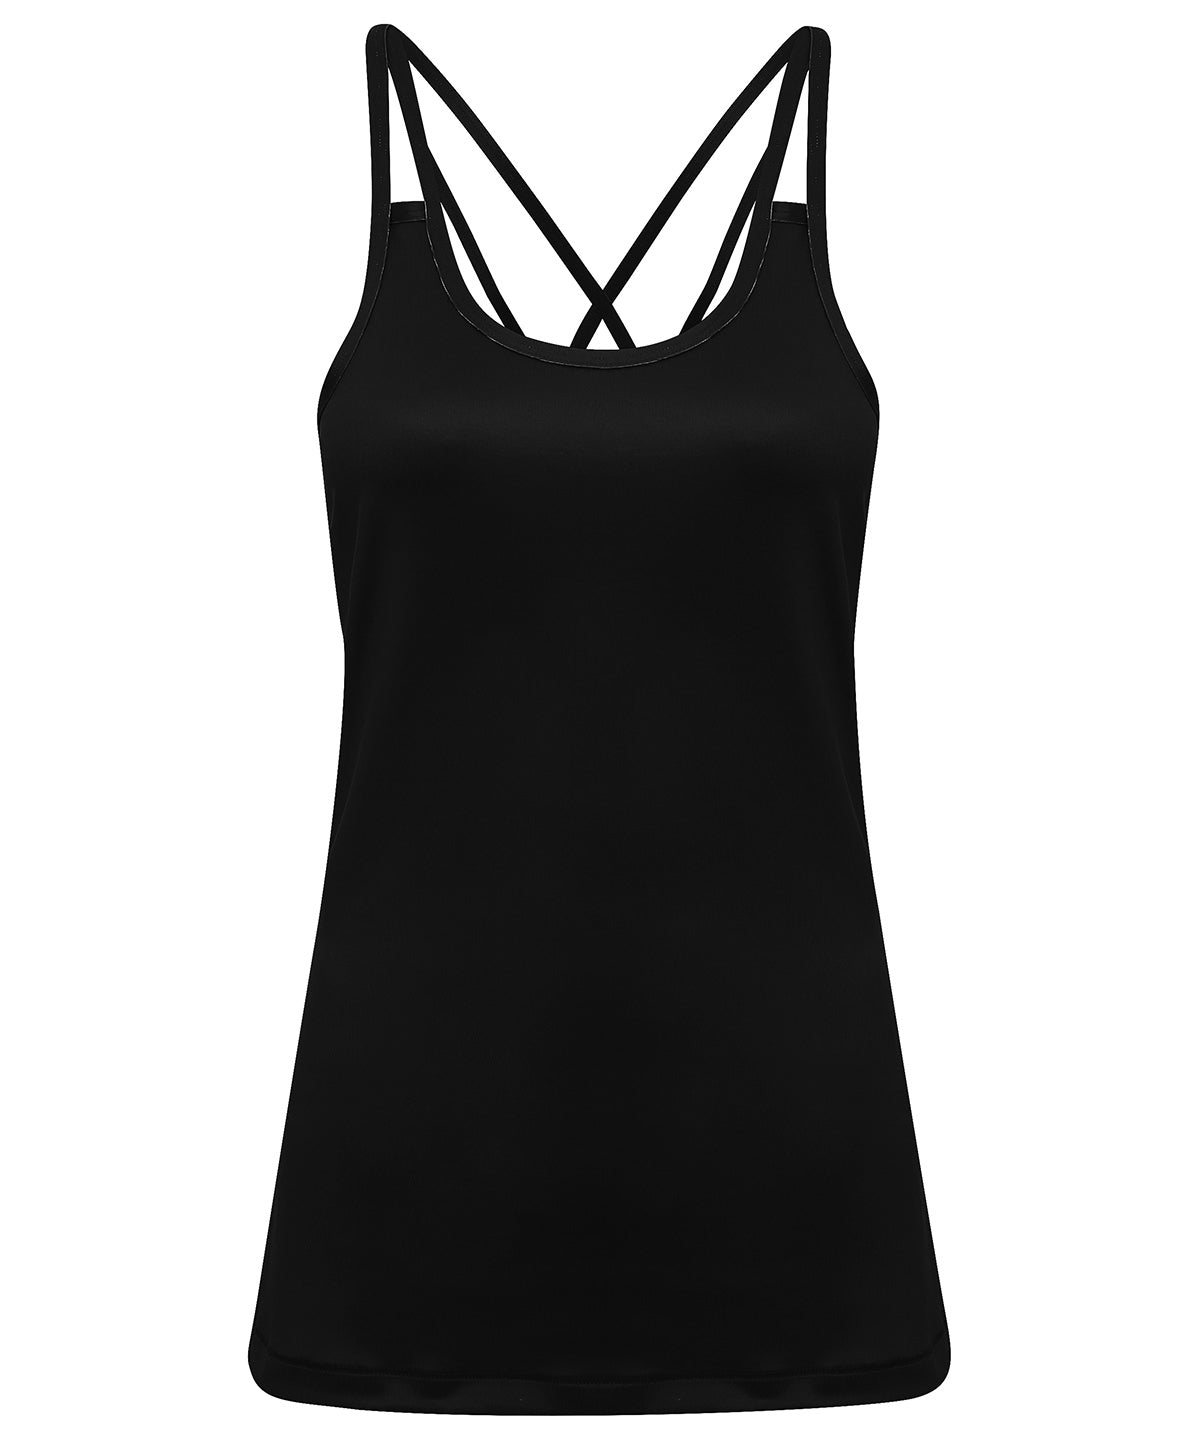 Vesti - Women's TriDri® 'laser Cut' Spaghetti Strap Vest